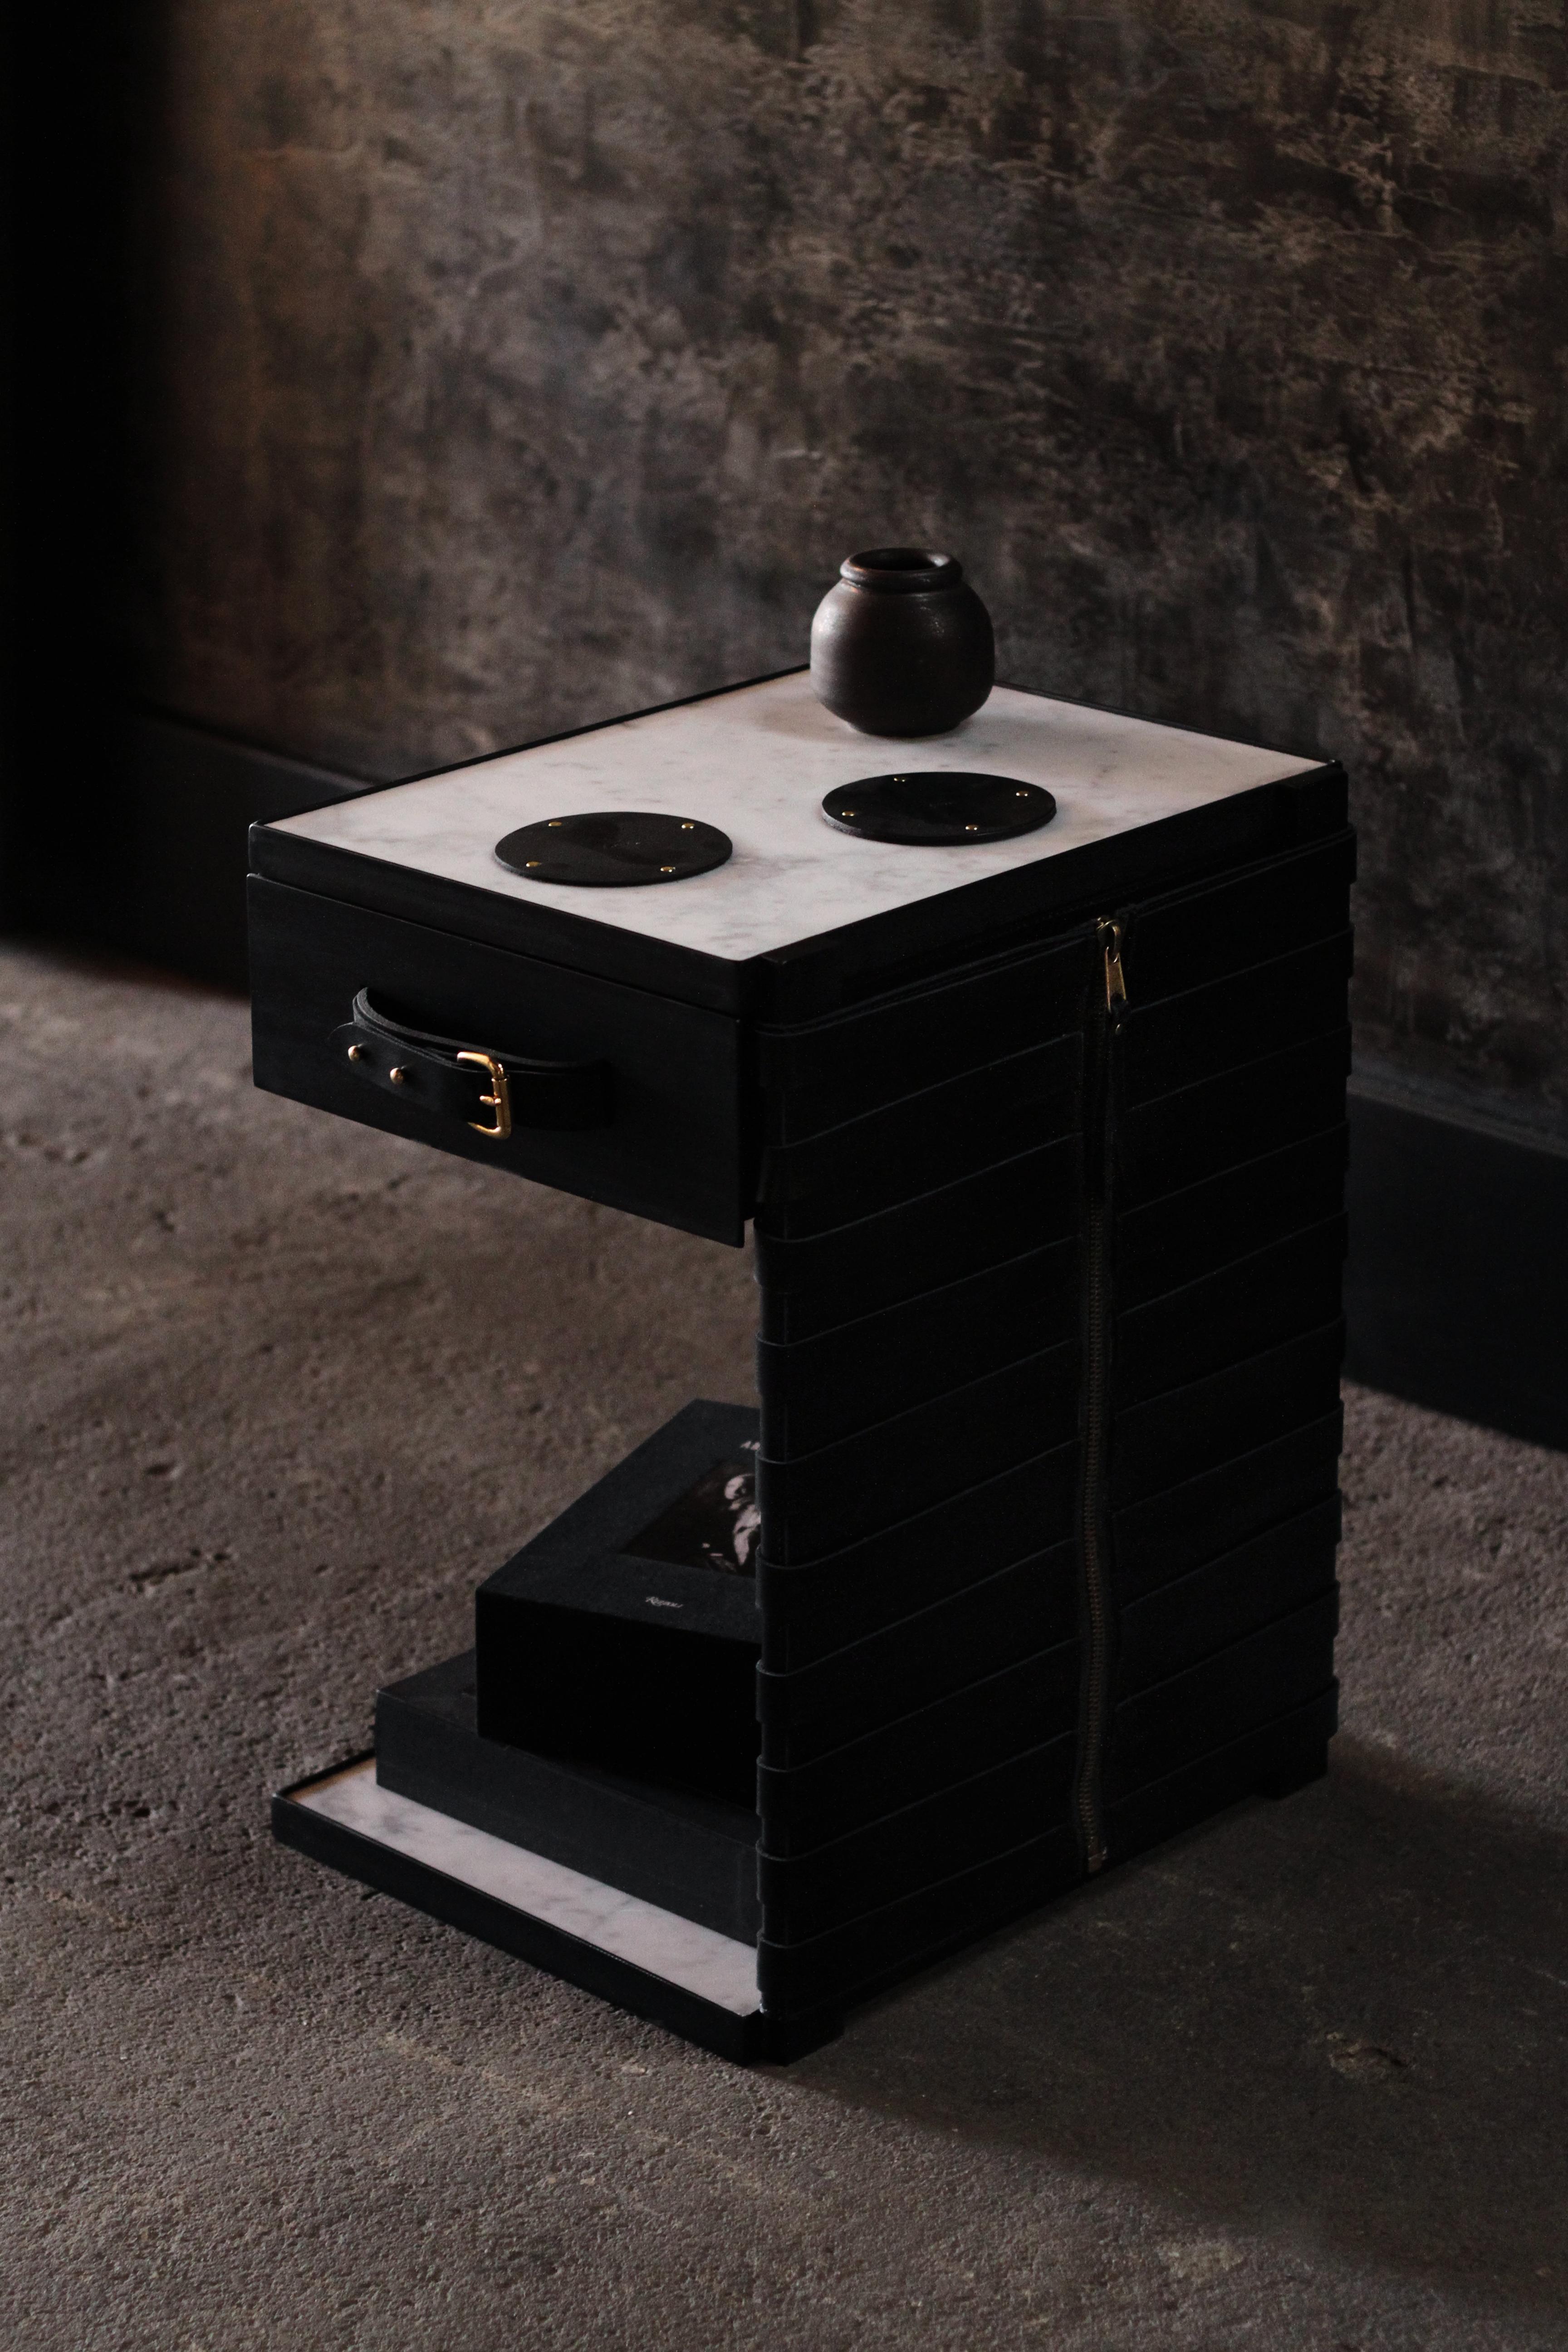 La table d'appoint (wh)ORE HAüS STUDIOS Restraint est faite d'acier noirci, de marbre, d'accents en laiton et de panneaux en cuir. Cette table est fabriquée sur commande et peut donc être personnalisée. Tel qu'illustré ; acier noirci, marbre Nero